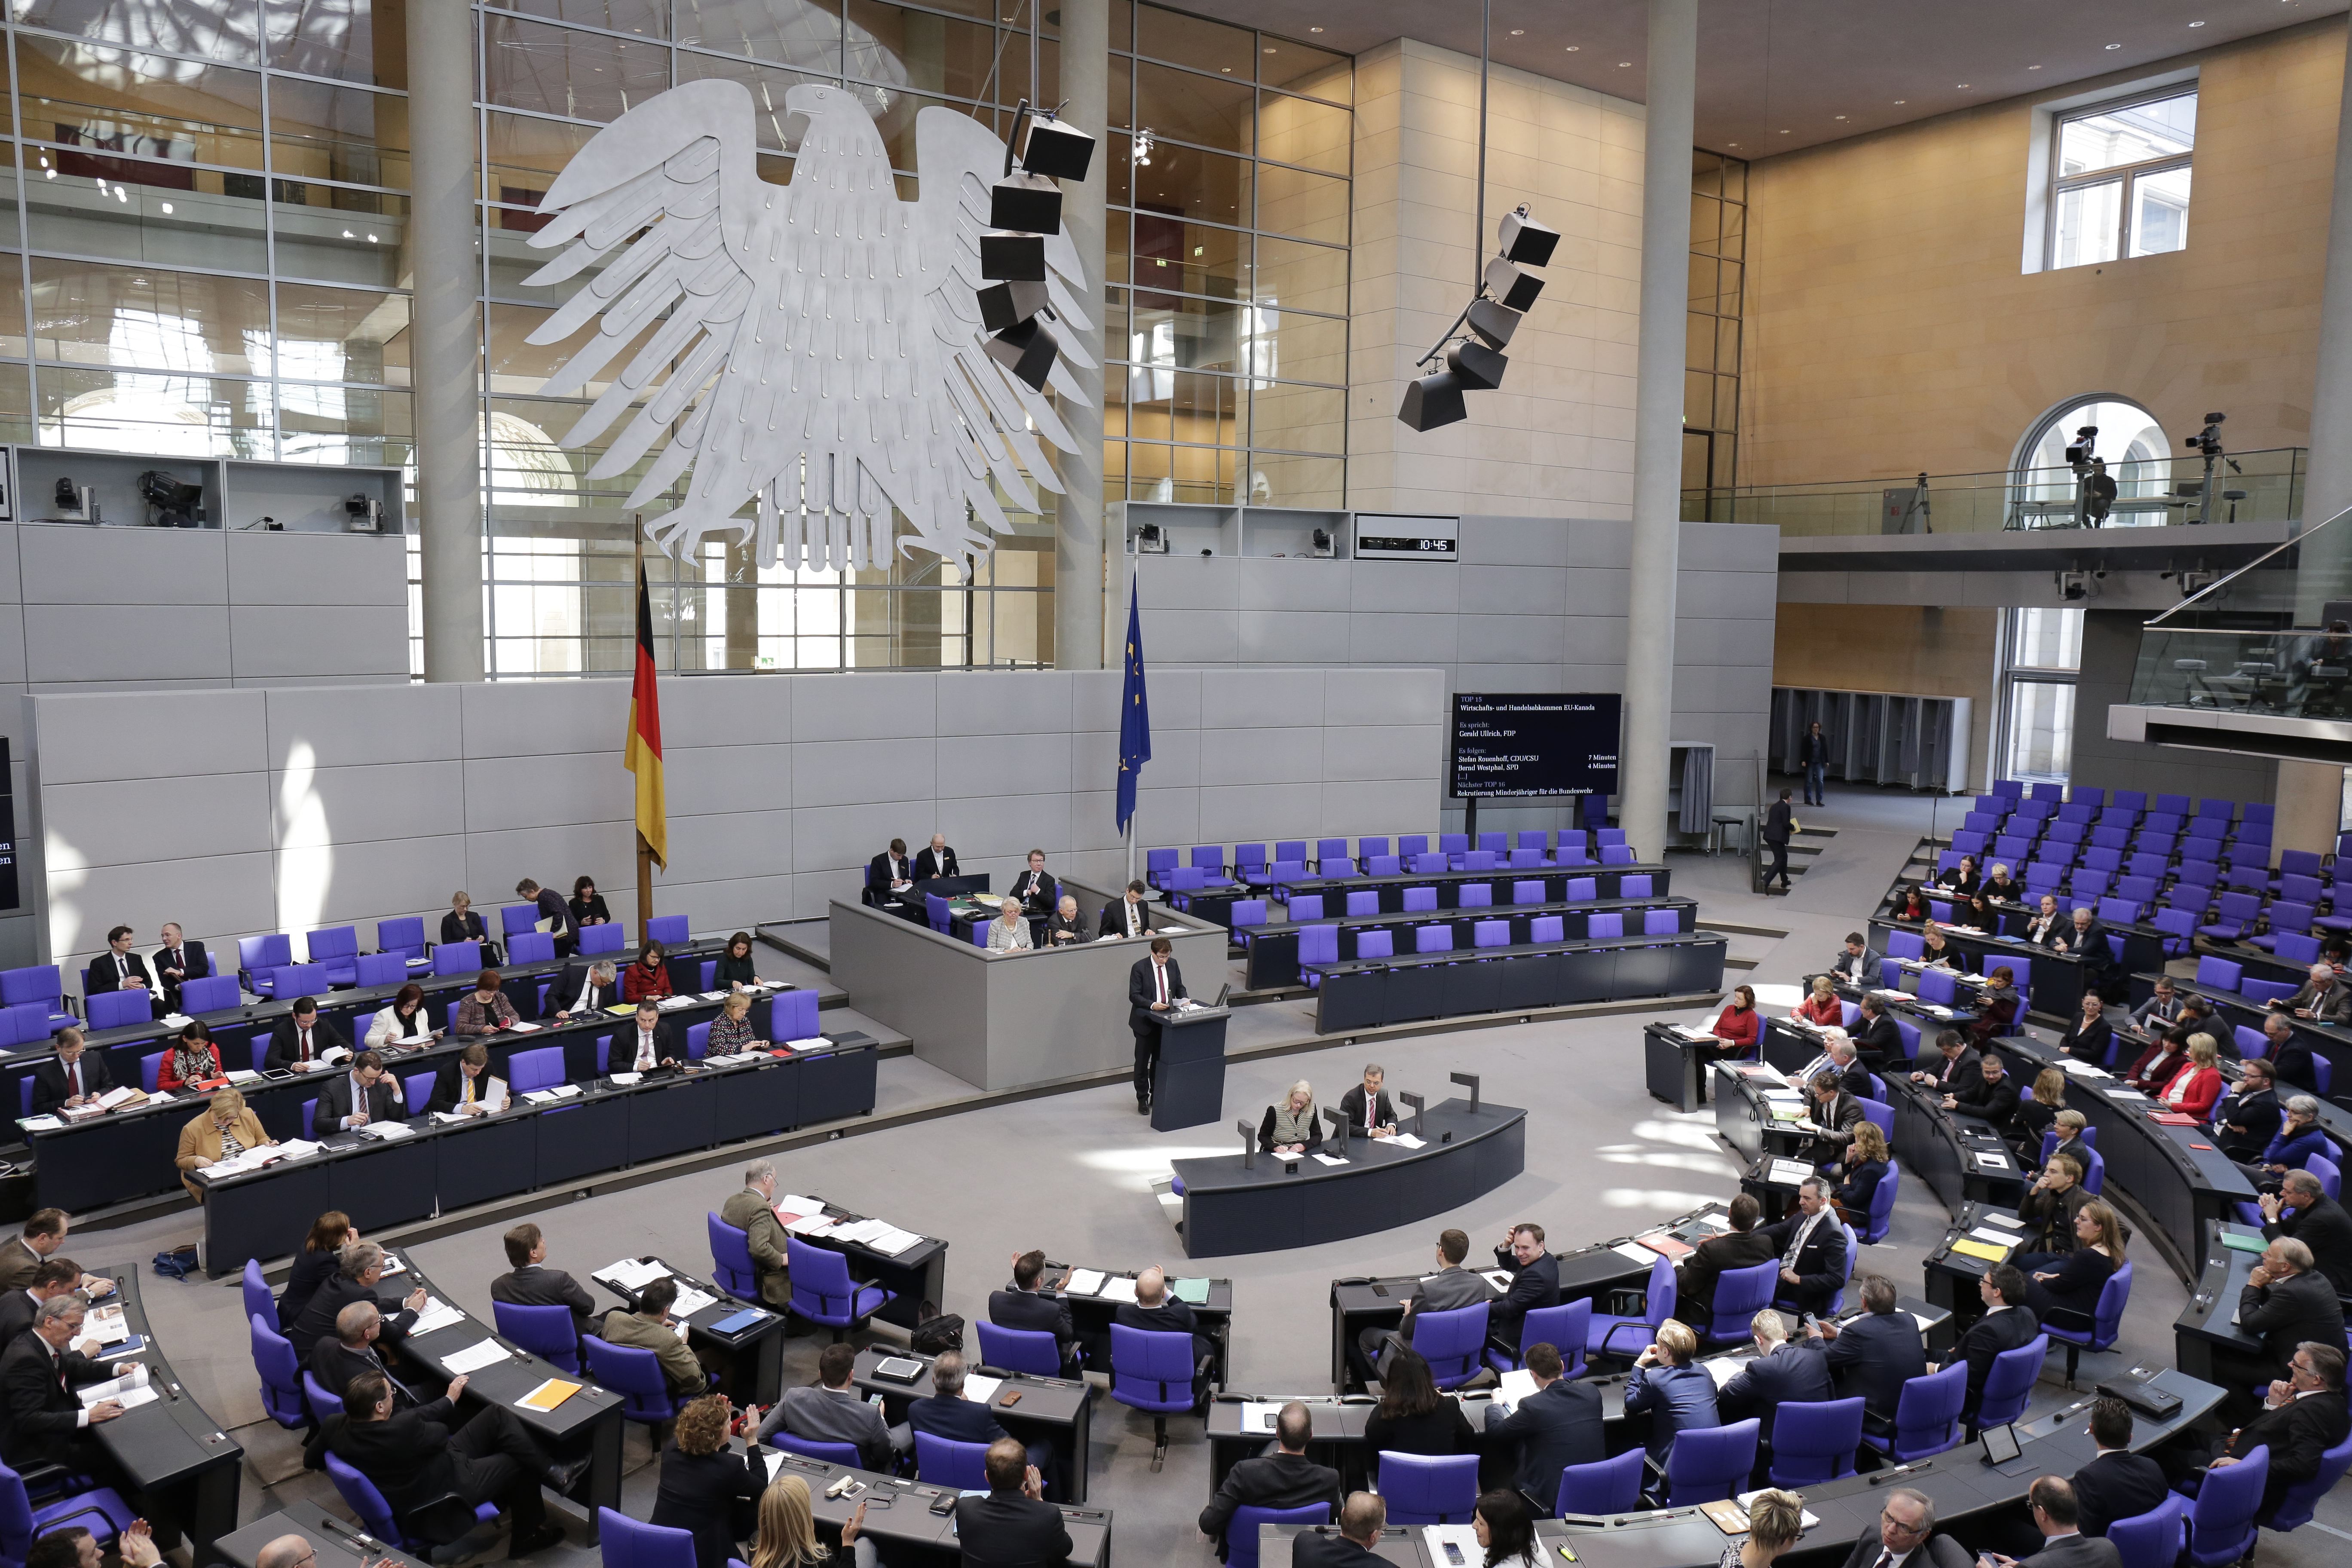 Plenum des Deutschen Bundestages